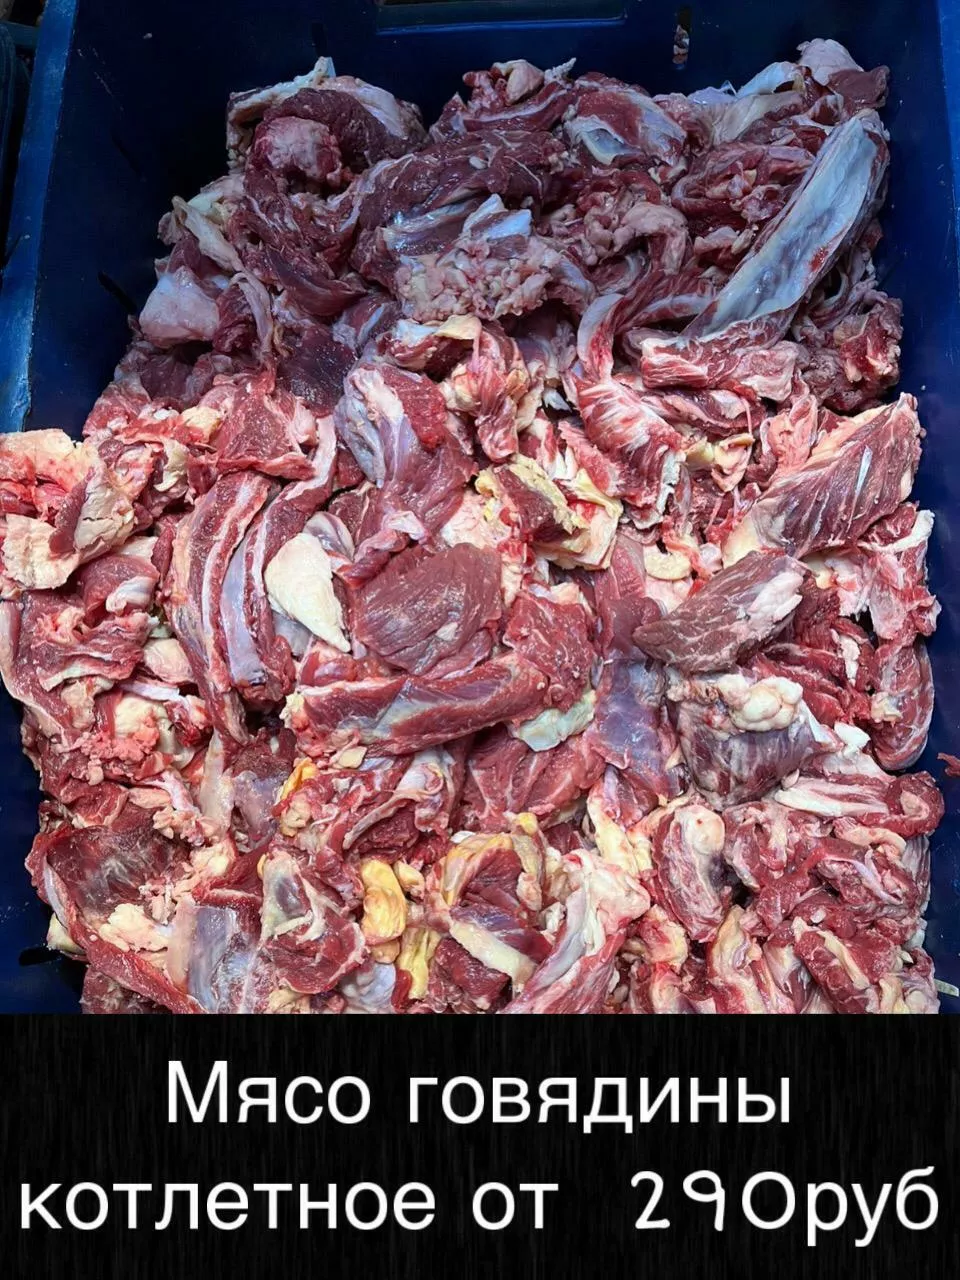 мясо - говядина и др. оптом! в Красноярске и Красноярском крае 5